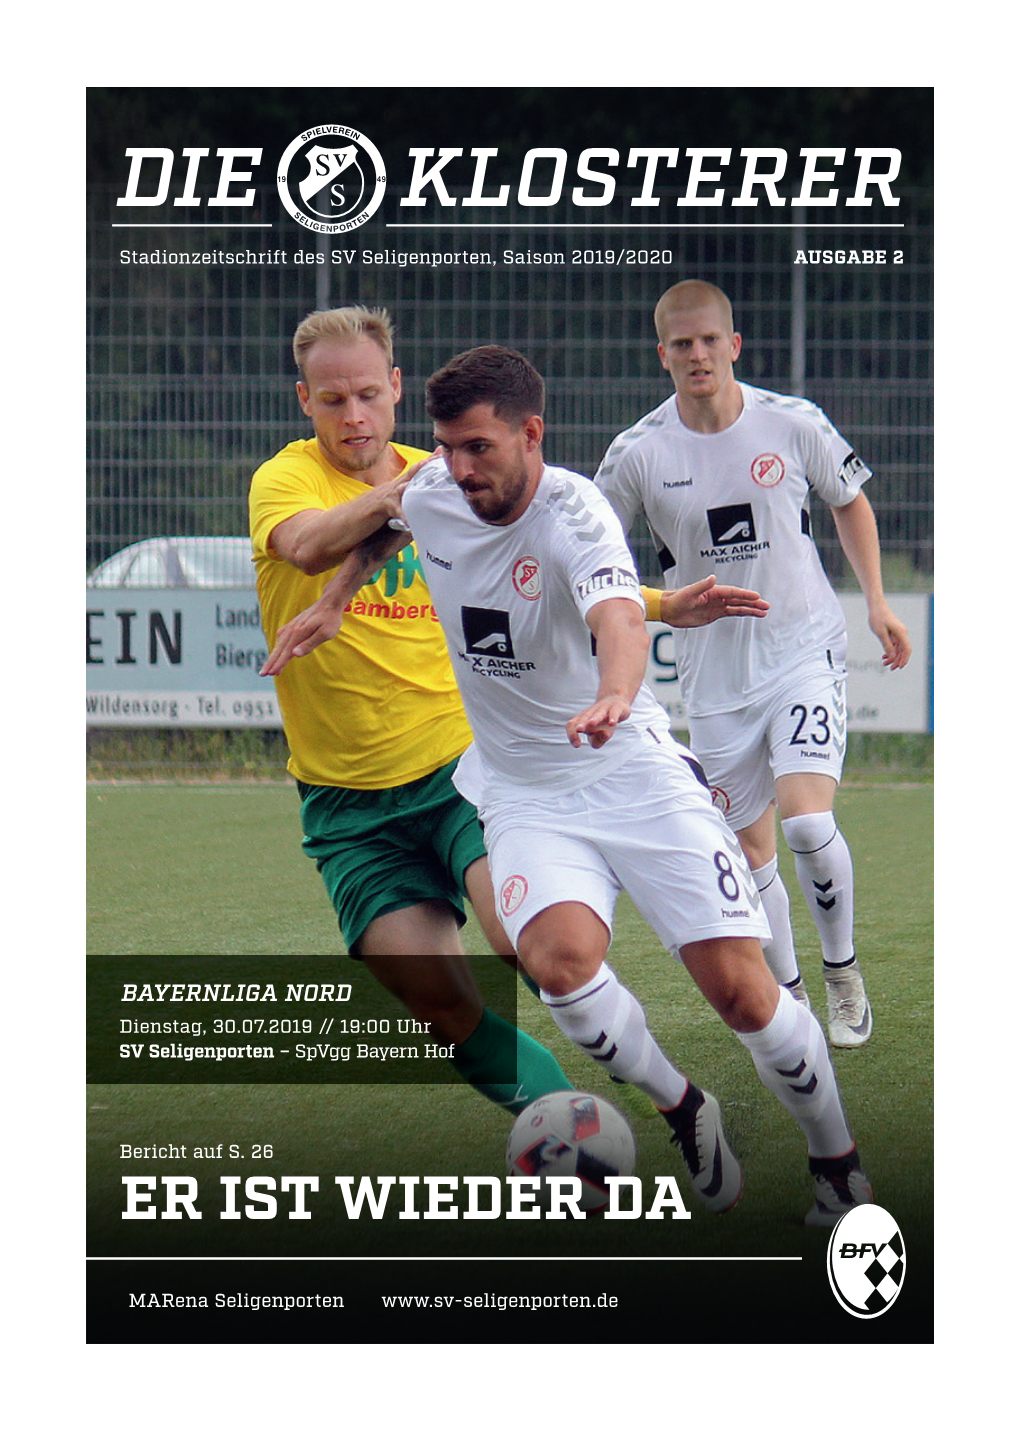 DIE KLOSTERER Stadionzeitschrift Des SV Seligenporten, Saison 2019/2020 AUSGABE 2